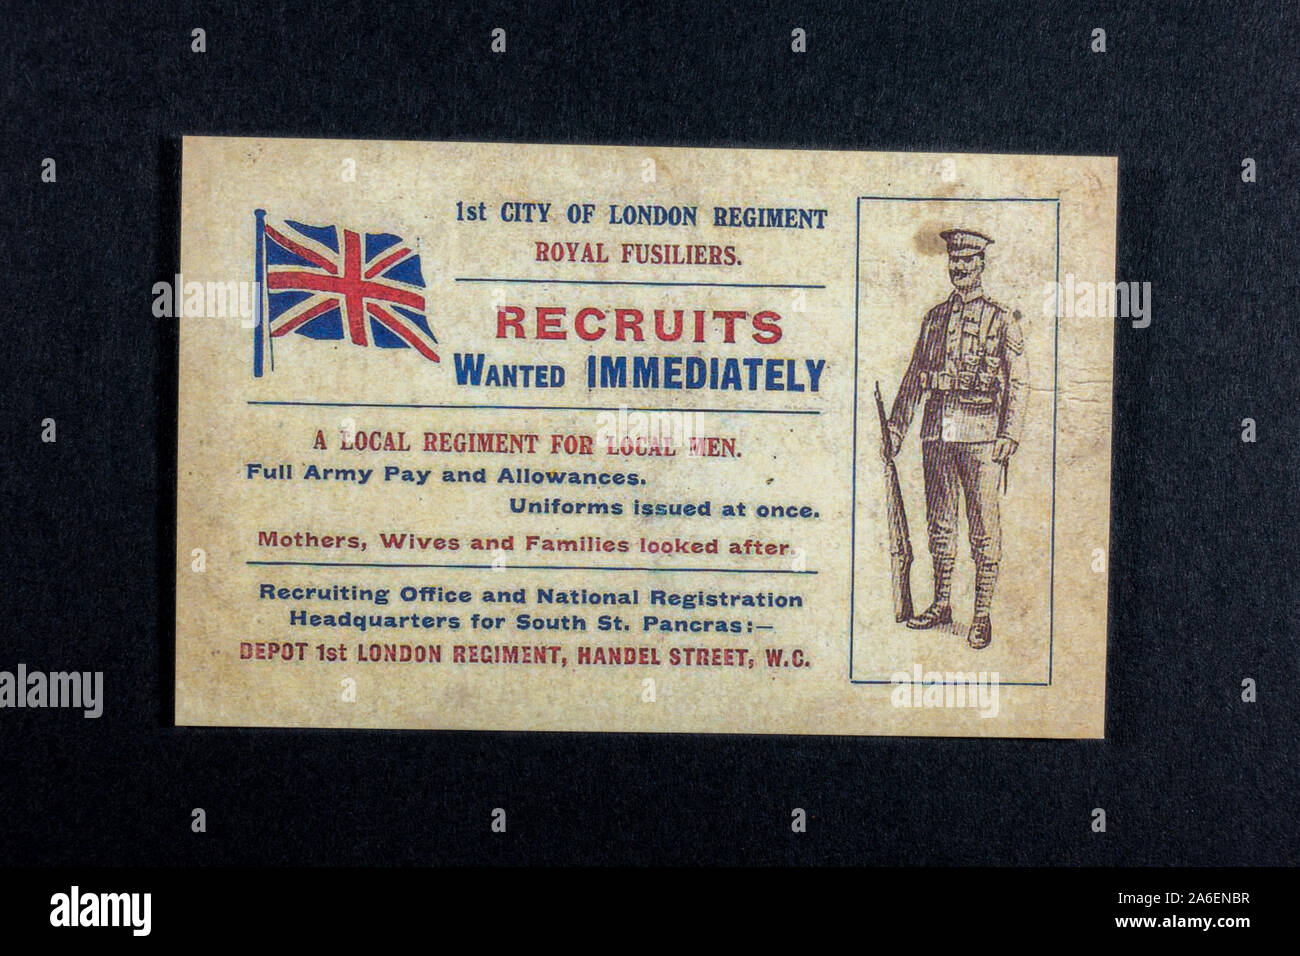 Armee-Rekrutierungspostkarte für die Royal Fusiliers, "Rekruten gesucht sofort", ein Stück Replikat-Erinnerungsstücke aus der ersten Zeit des ersten Weltkriegs. Stockfoto